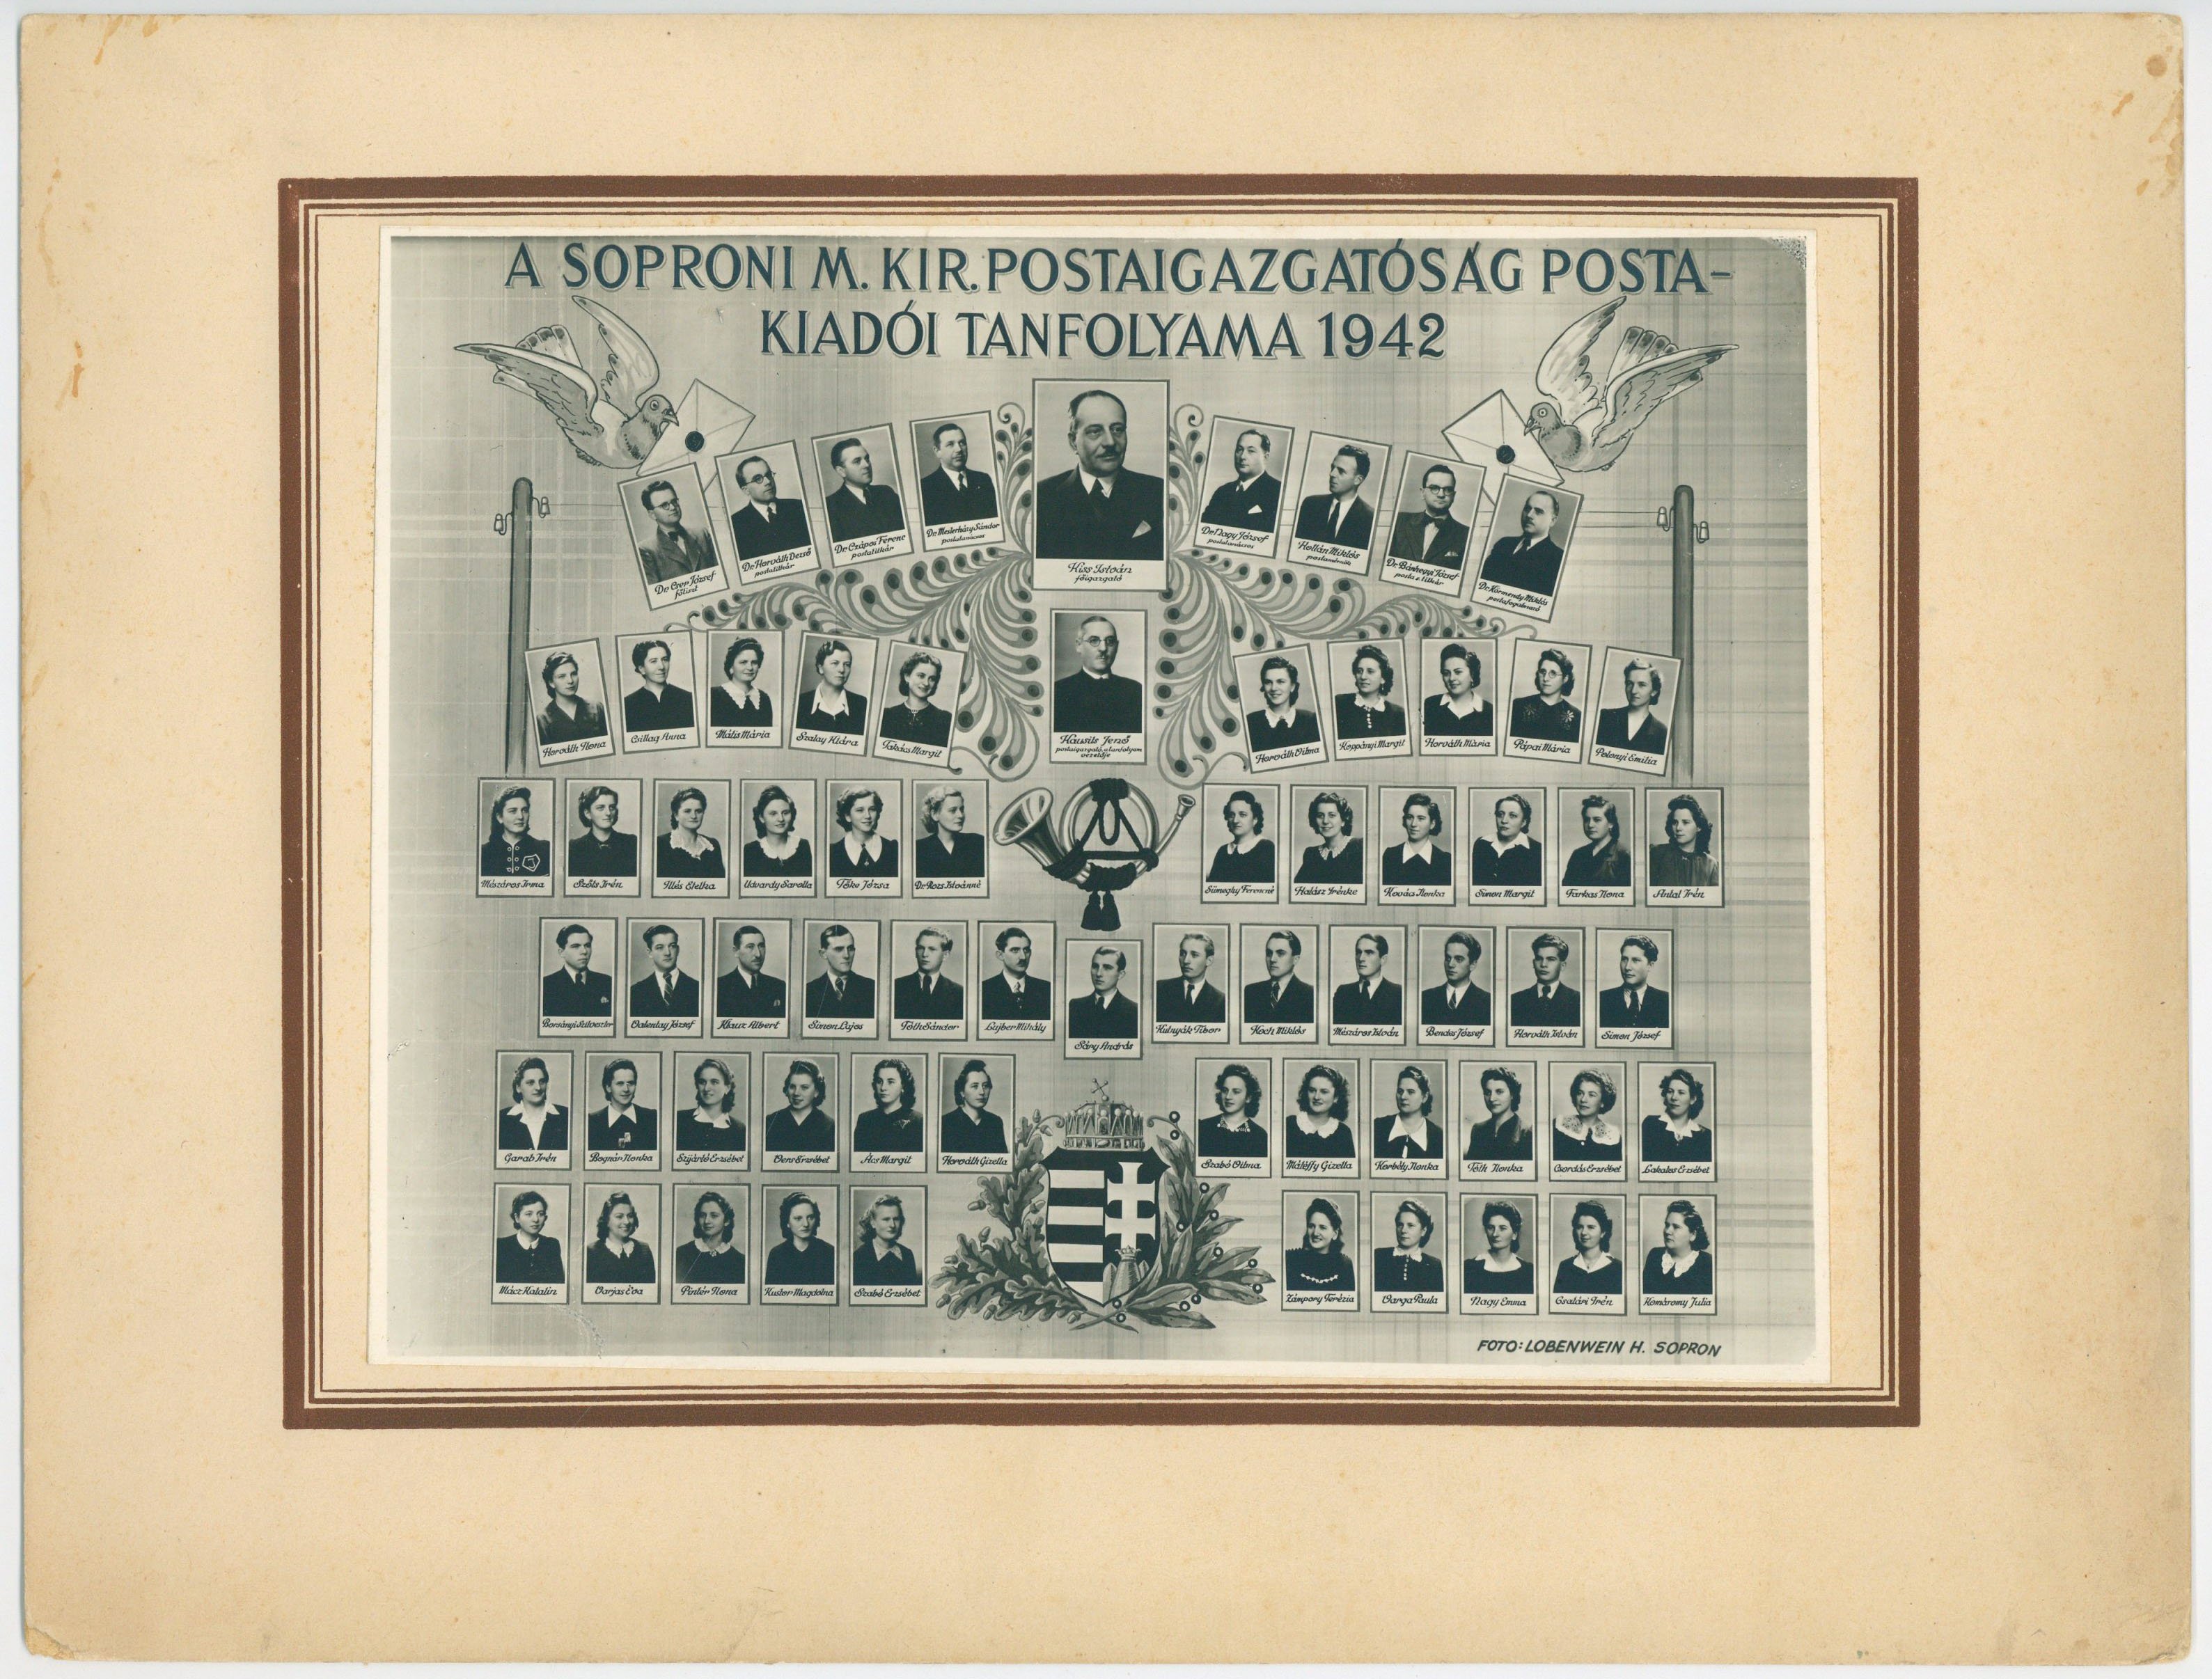 Soproni postakiadói tanfolyam tablóképe 1942-ben (Postamúzeum CC BY-NC-SA)